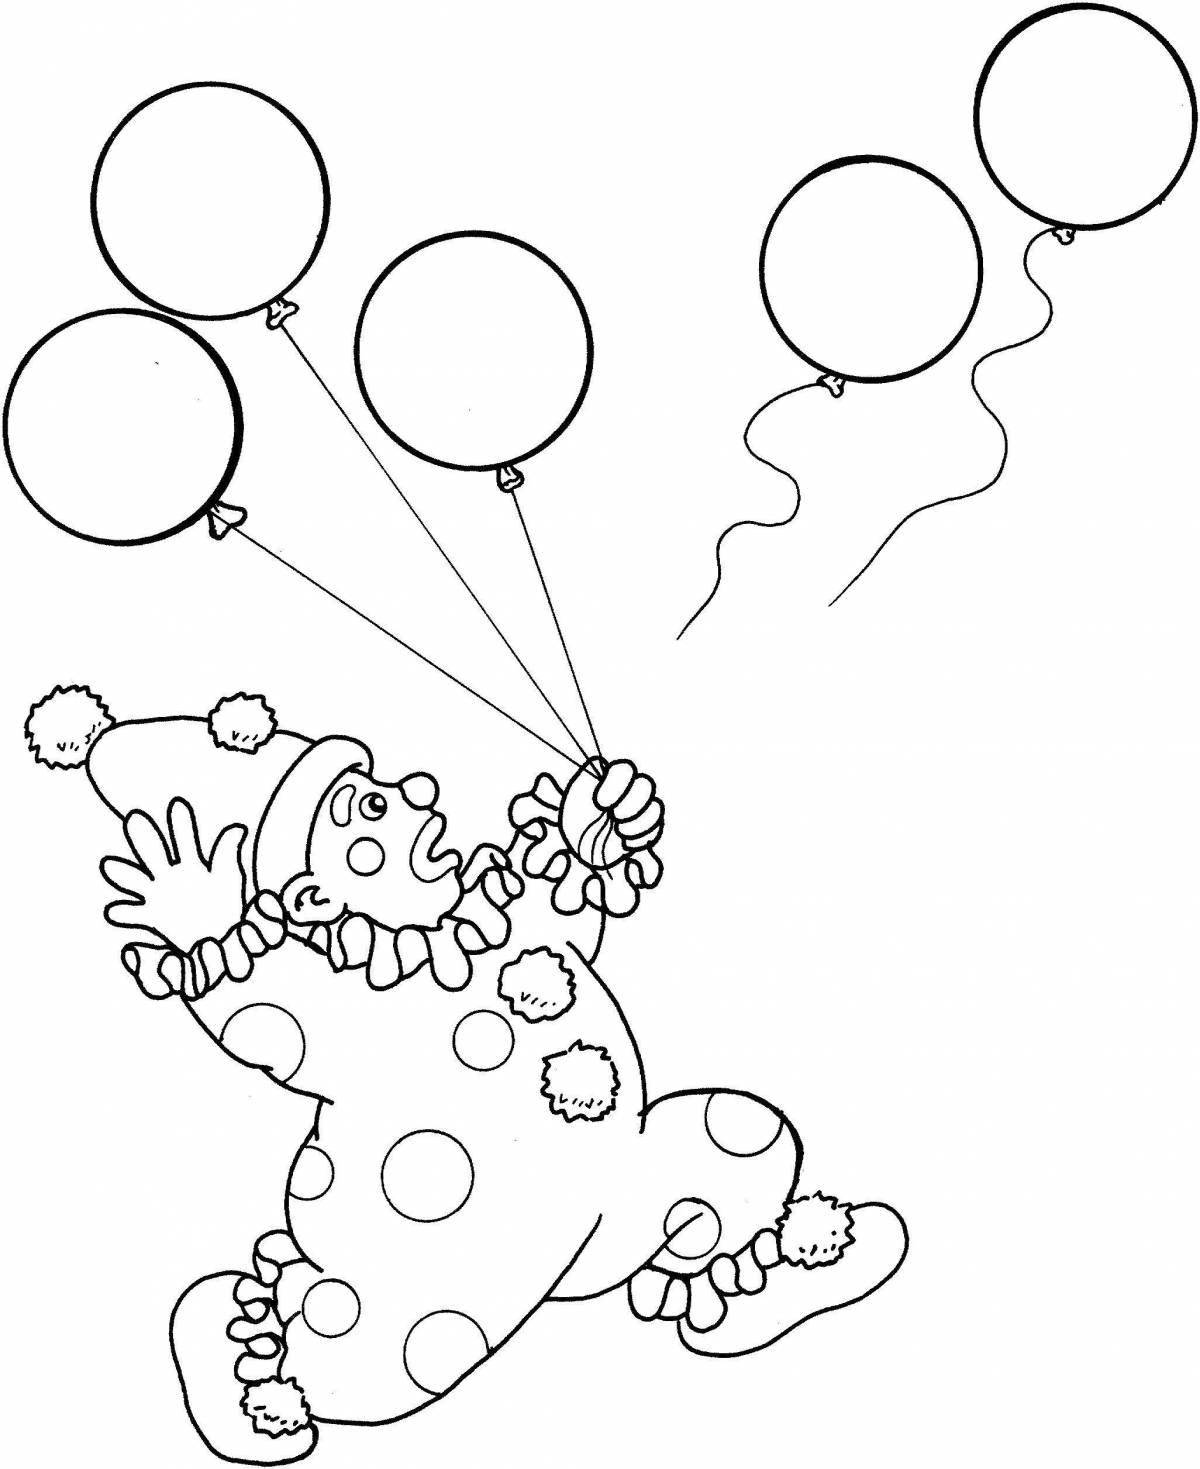 Энергичный клоун с воздушными шарами